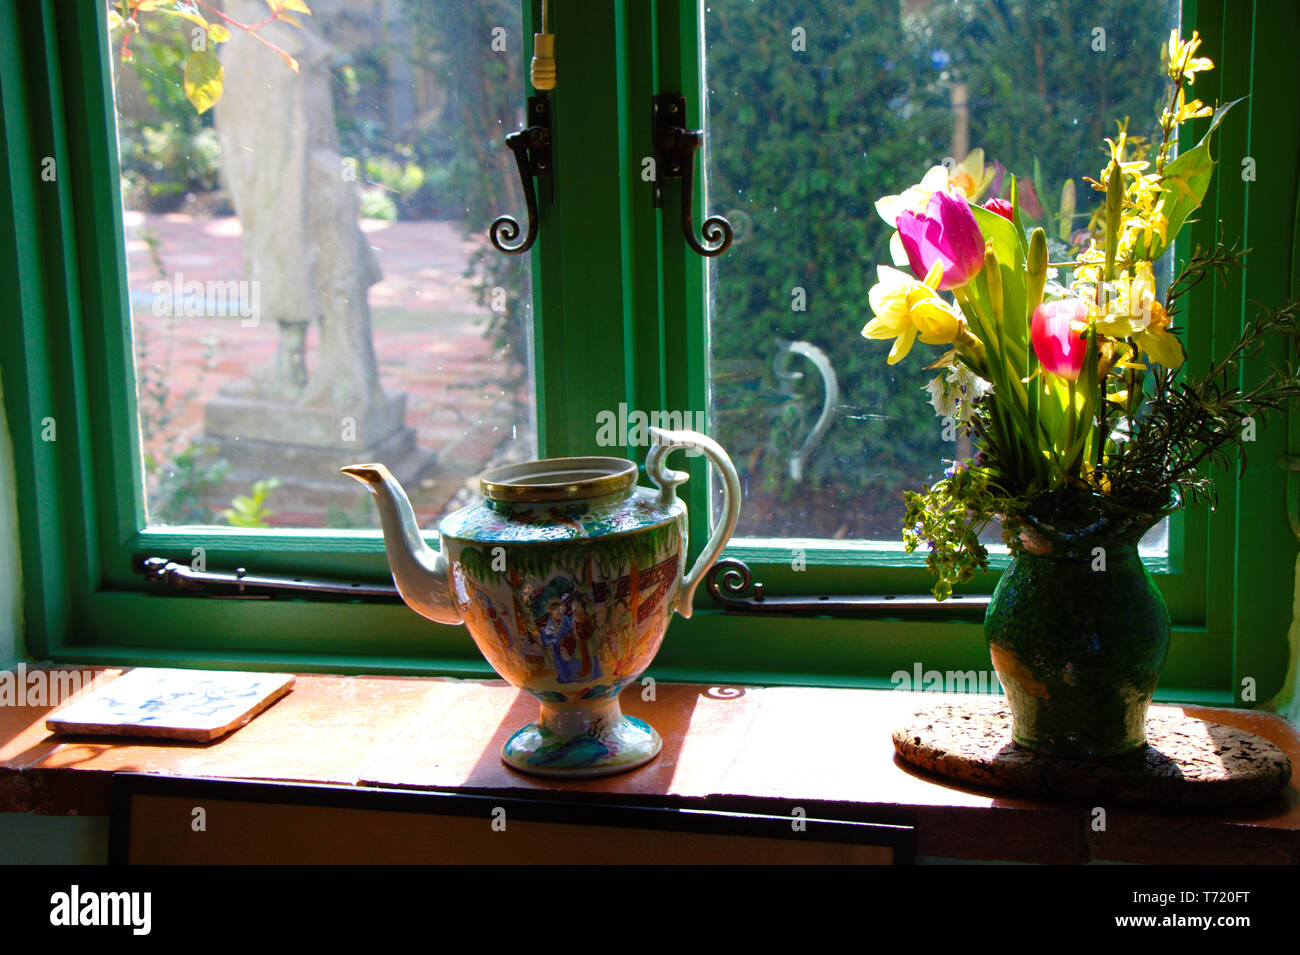 Fenêtre verte décorée d'appui de fenêtre. Meubles style anglais. Fleurs dans un vase et un plateau pot sur un rebord de fenêtre. Banque D'Images